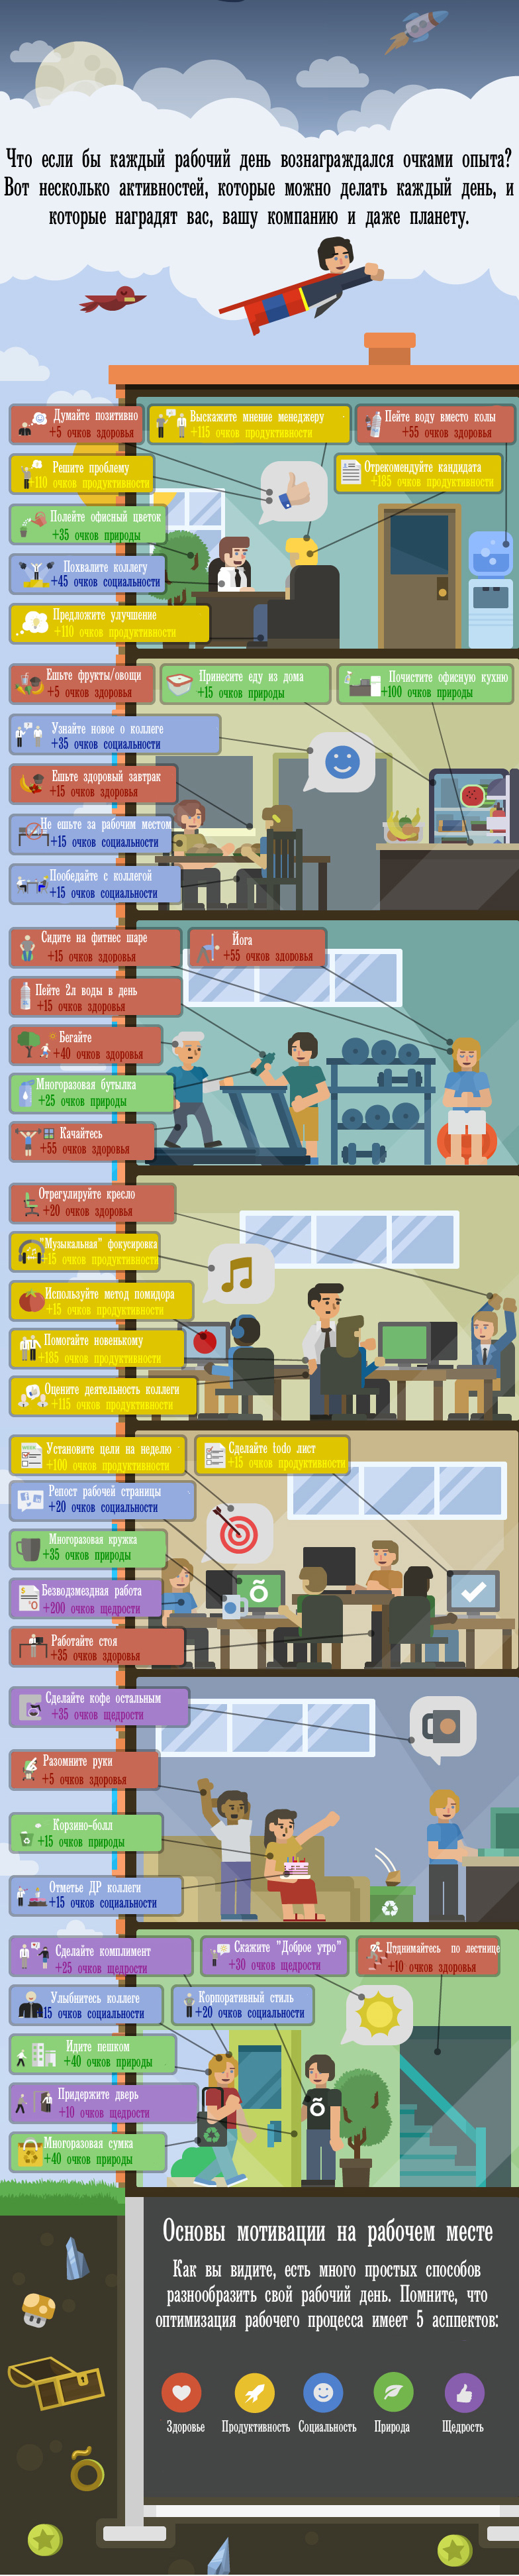 Инфографика 44 активности для наслаждения работой